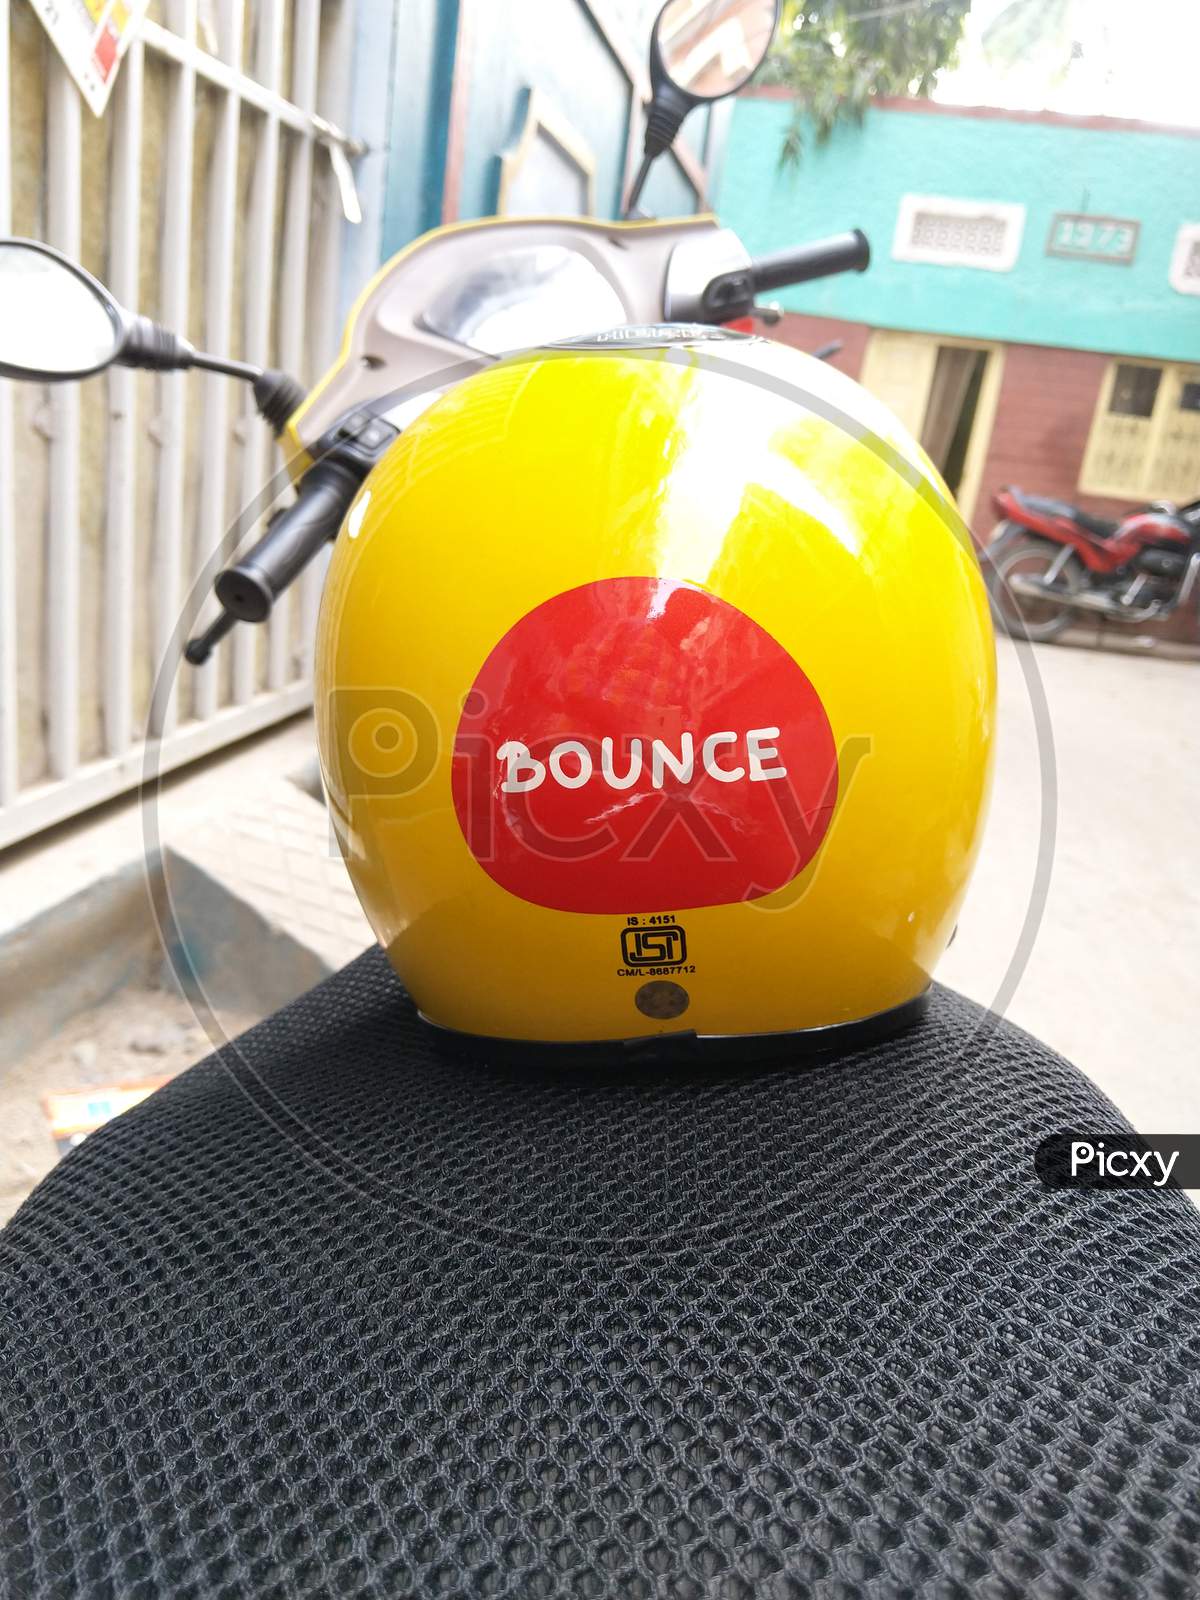 buy bounce bike